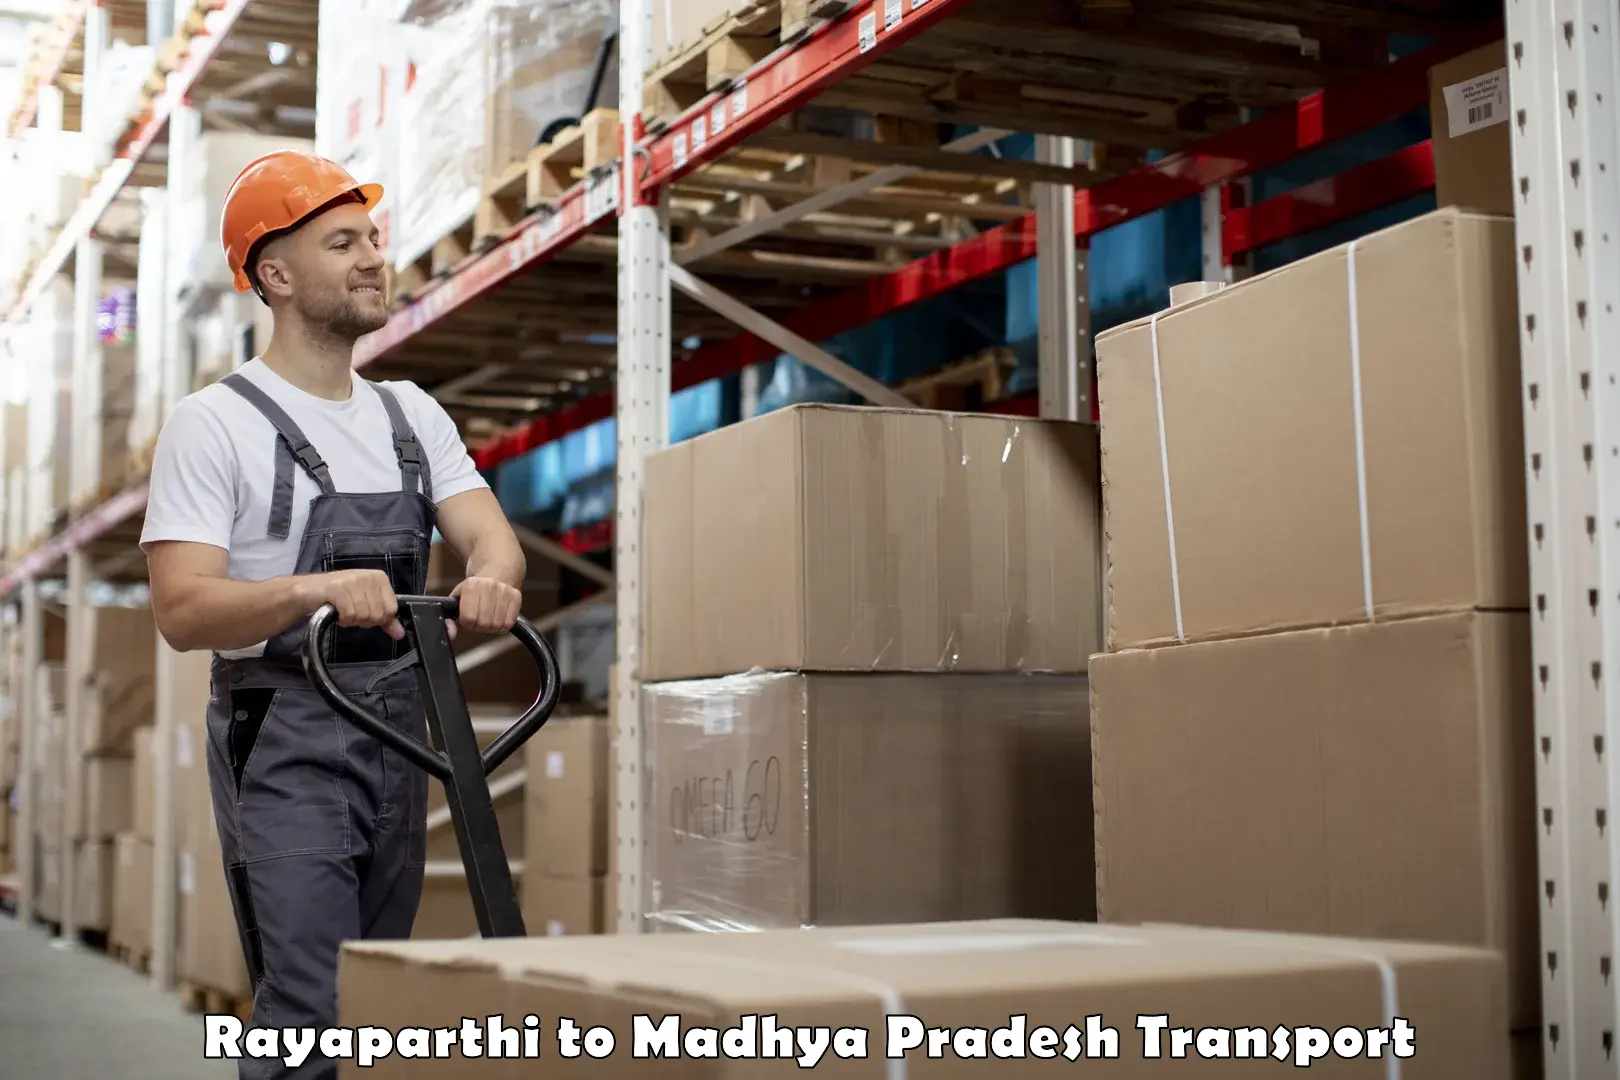 Shipping partner Rayaparthi to BHEL Bhopal